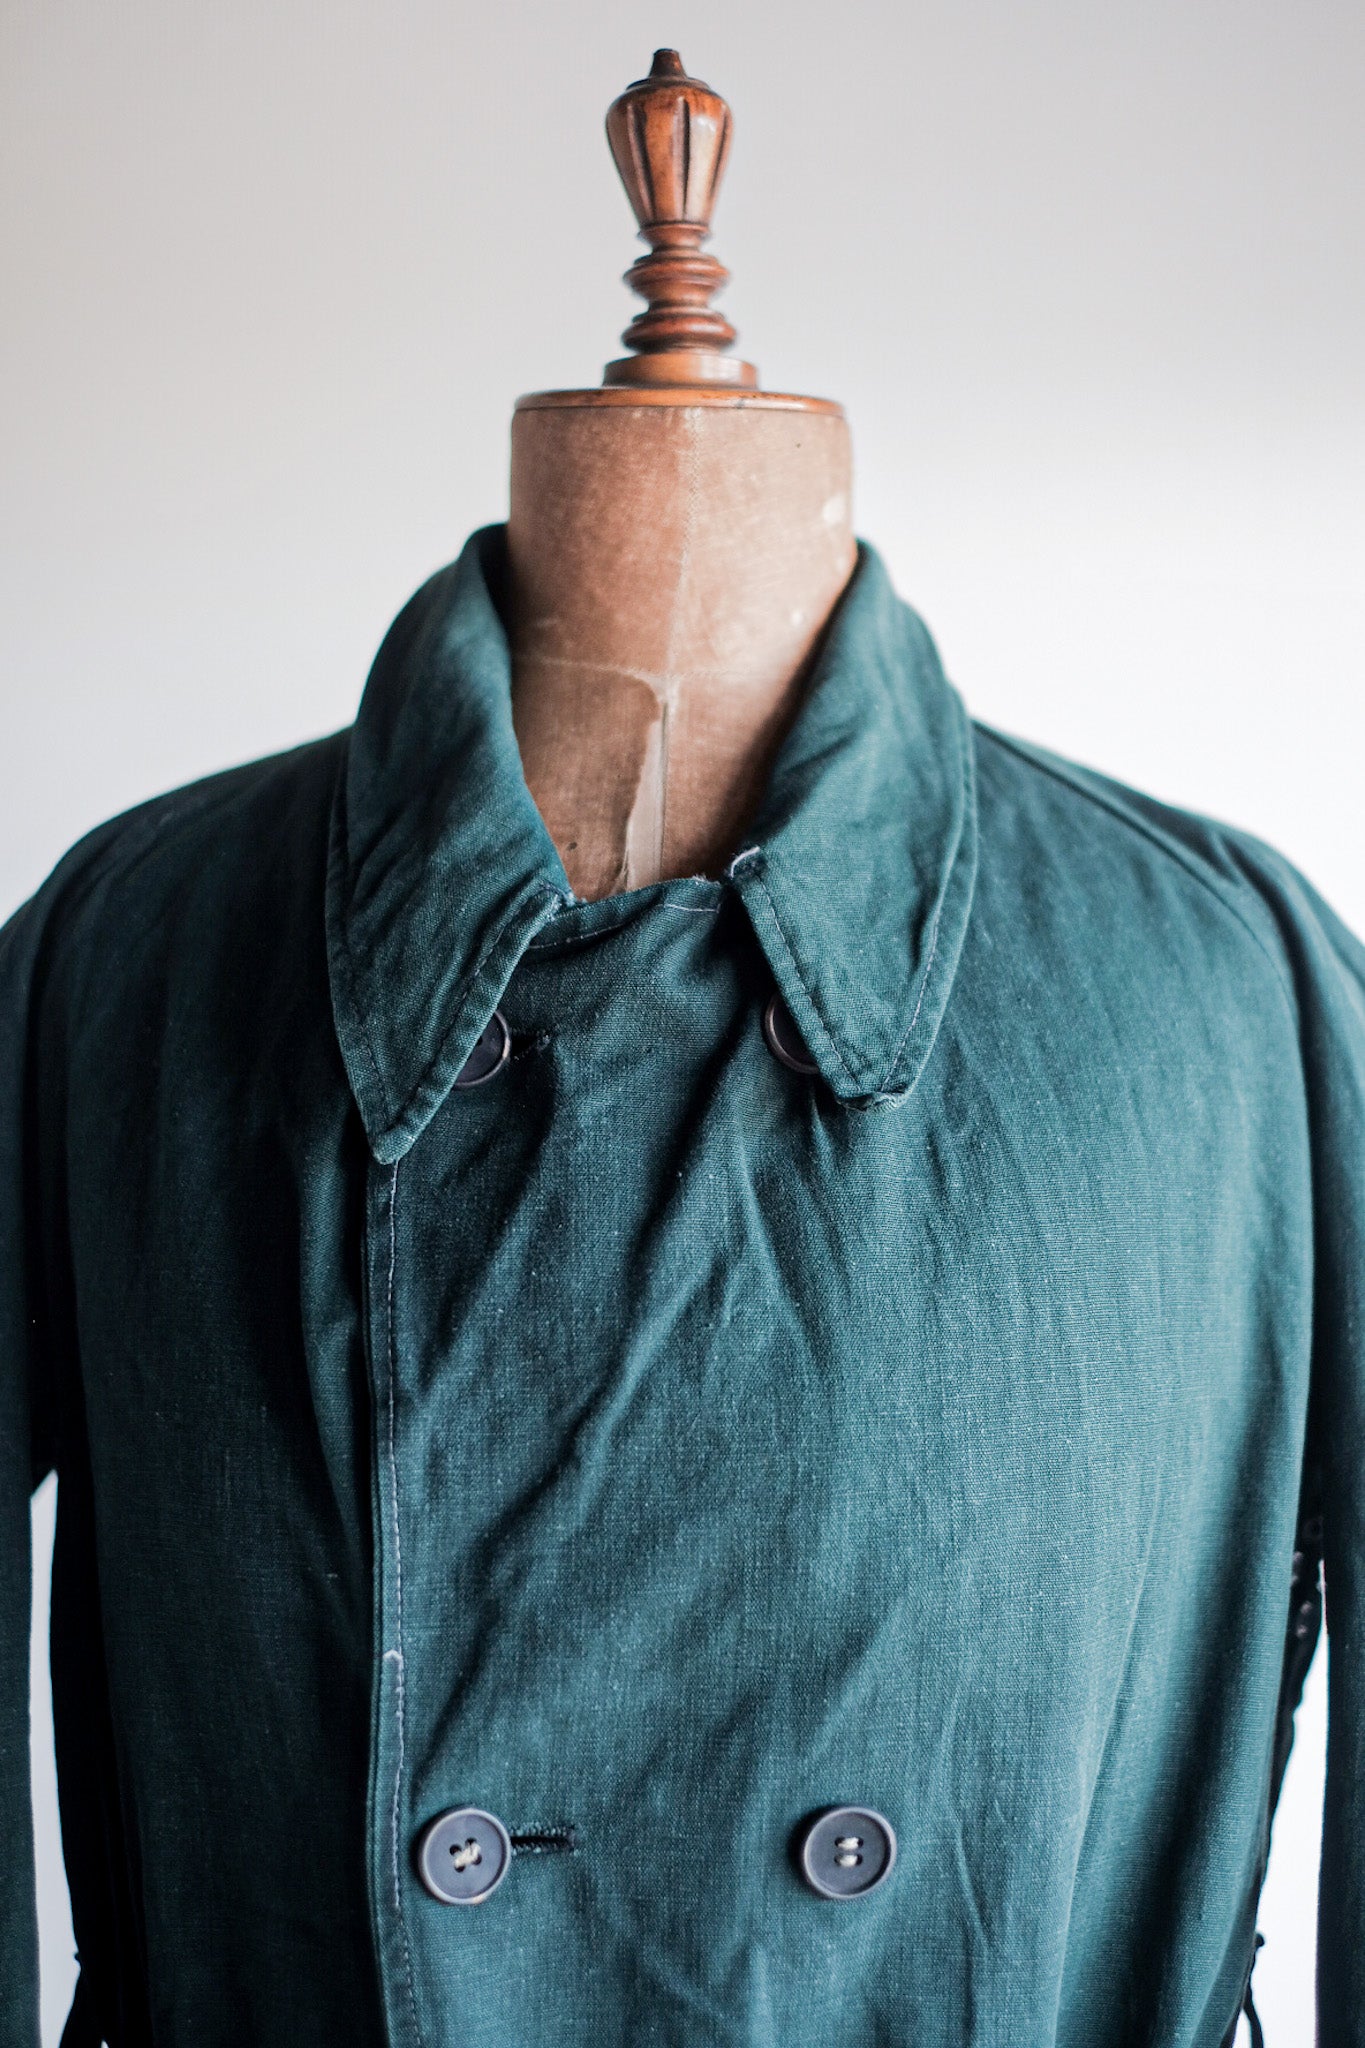 [〜40年代]法國軍隊雙胸綠色亞麻帆布夾克